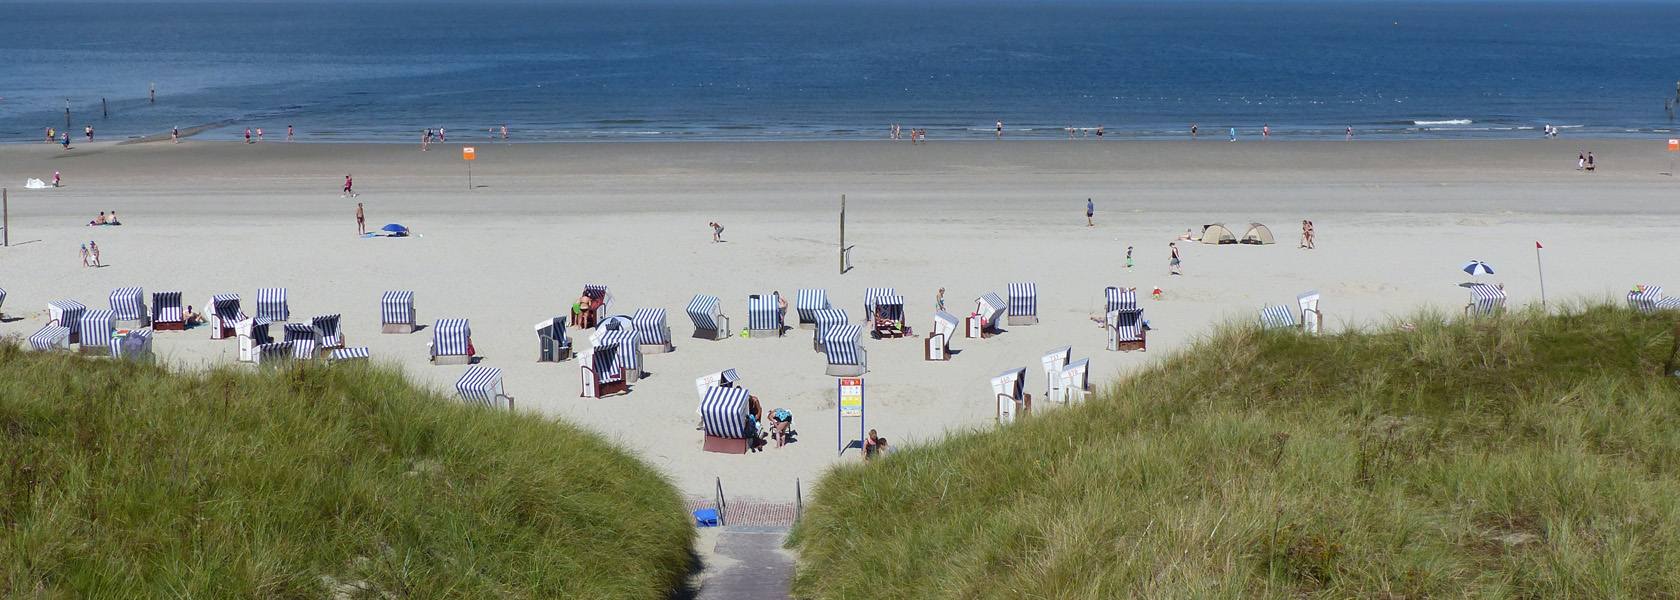 Strand auf Norderney, © Die Nordsee GmbH, Birte Kreitz